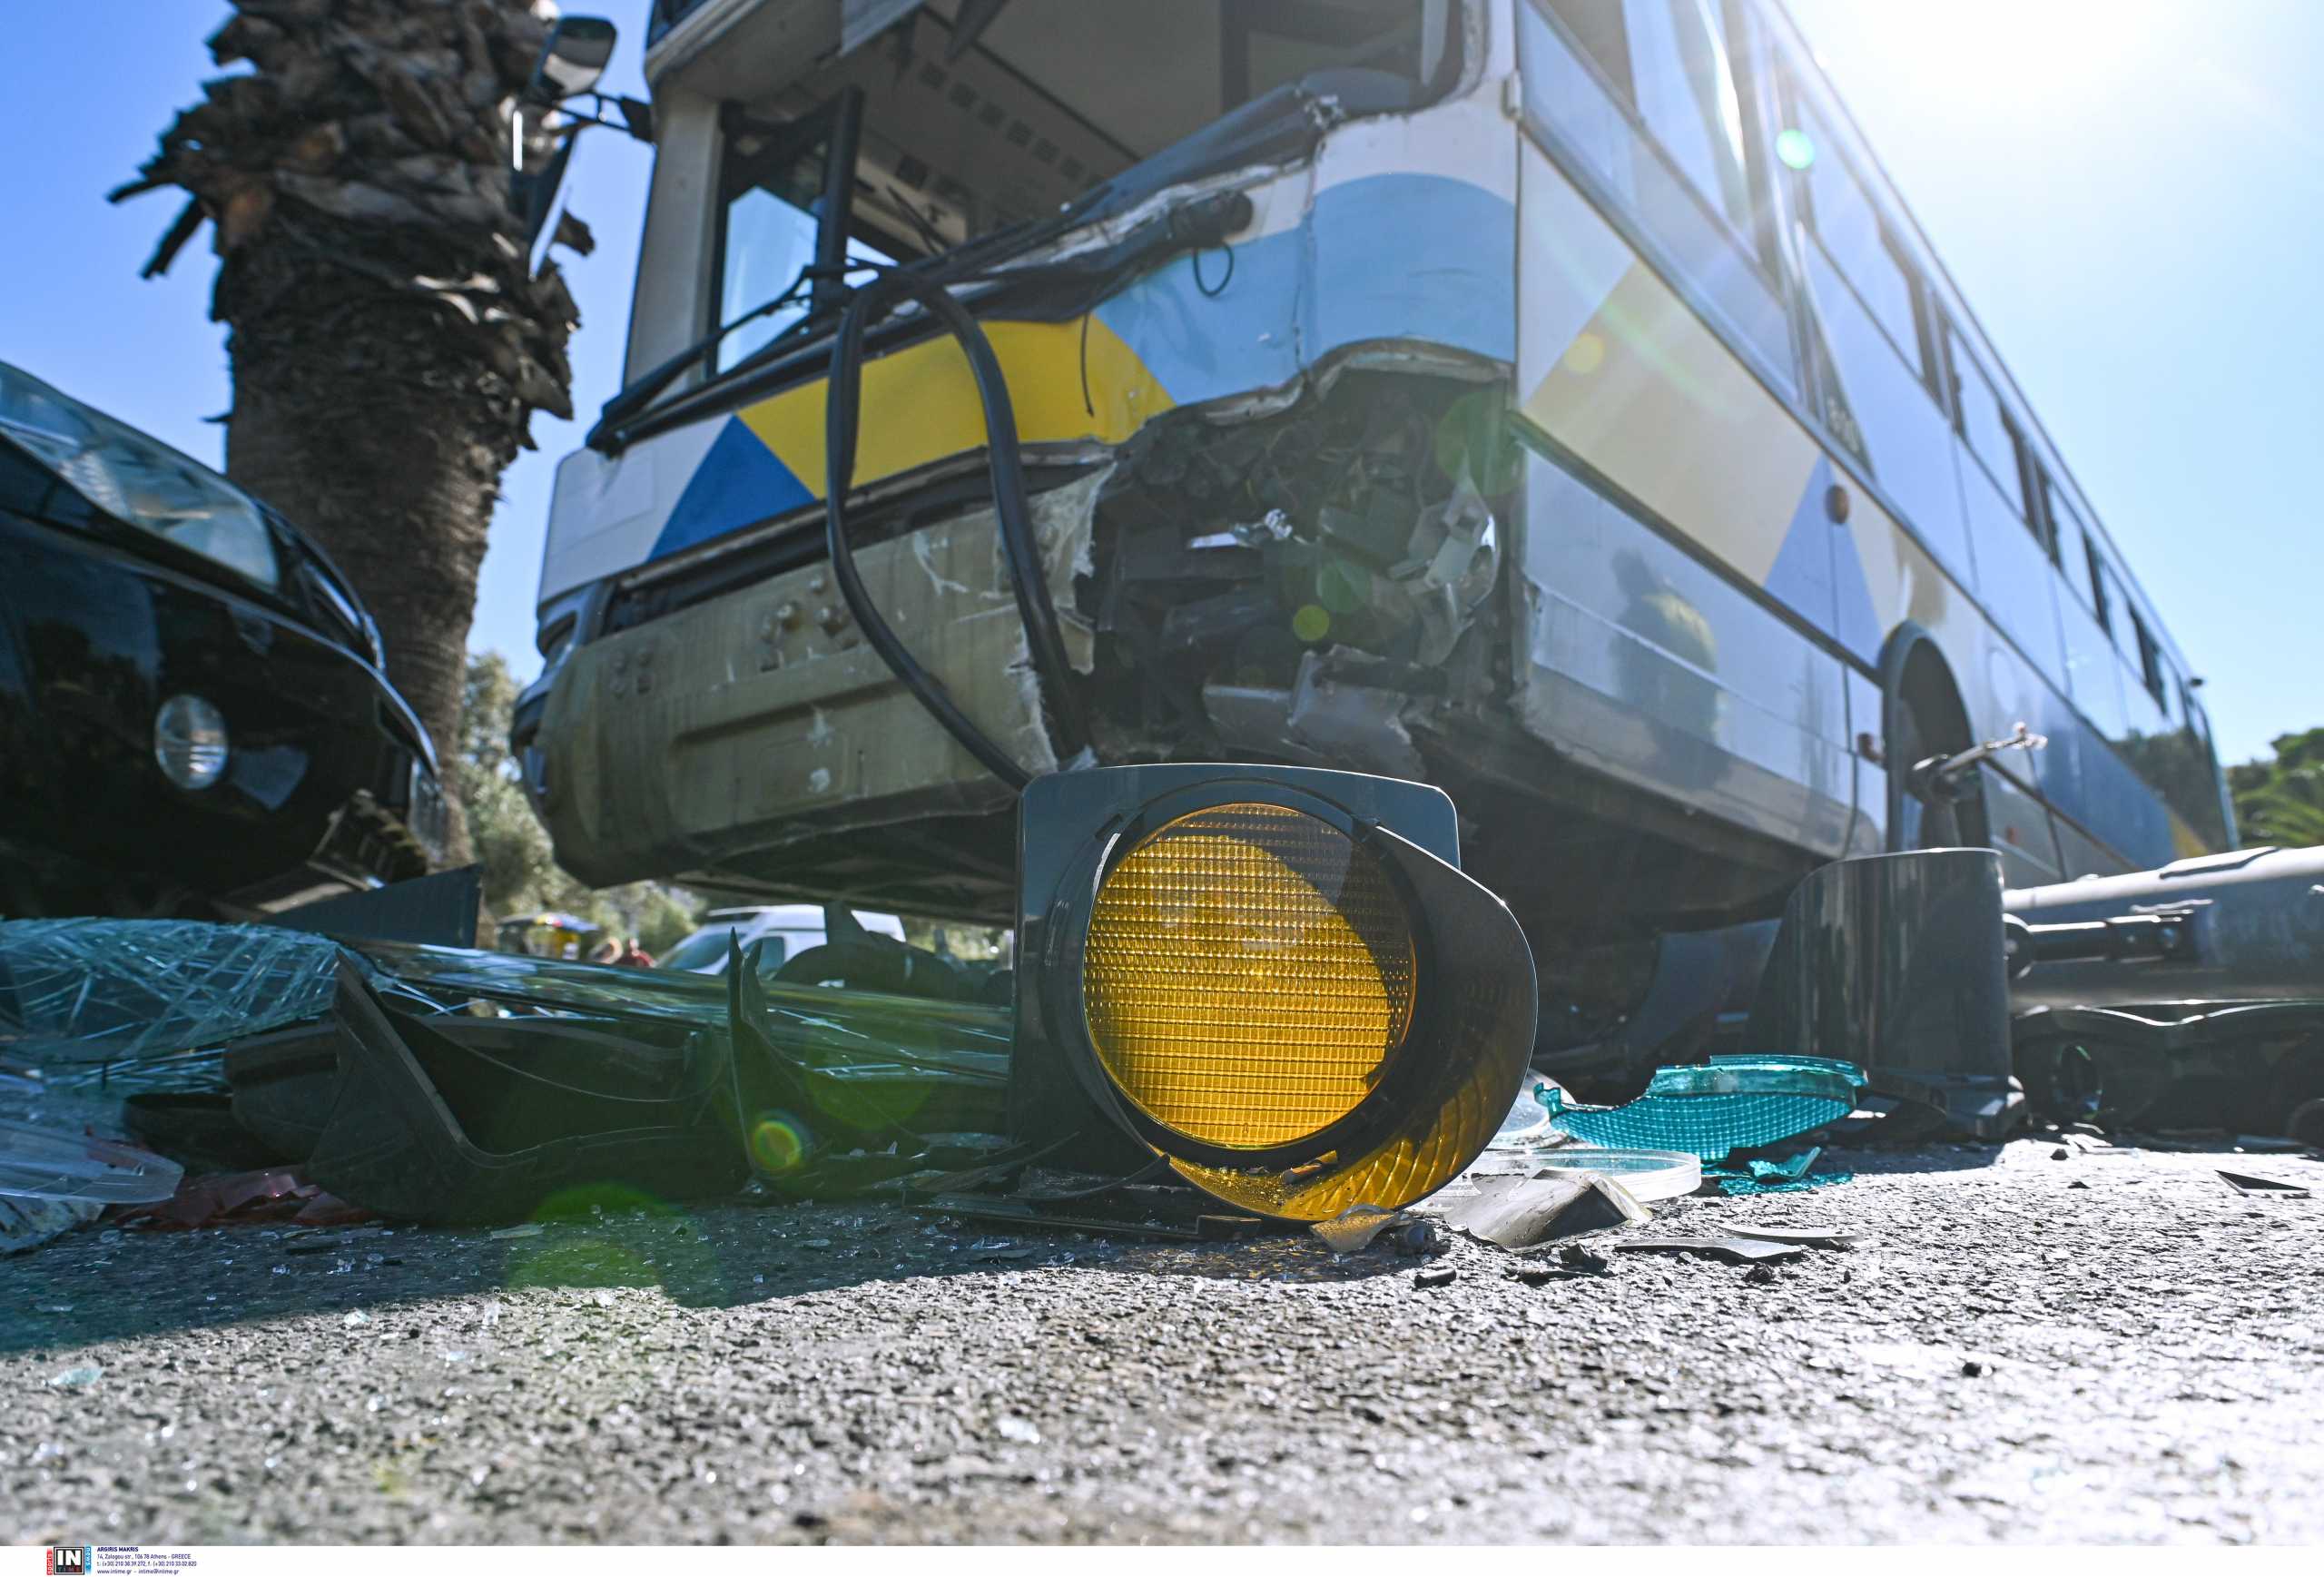 Θεσσαλονίκη: Τροχαίο με αυτοκίνητο να «καρφώνεται» σε εν κινήσει λεωφορείο – Ένας τραυματίας